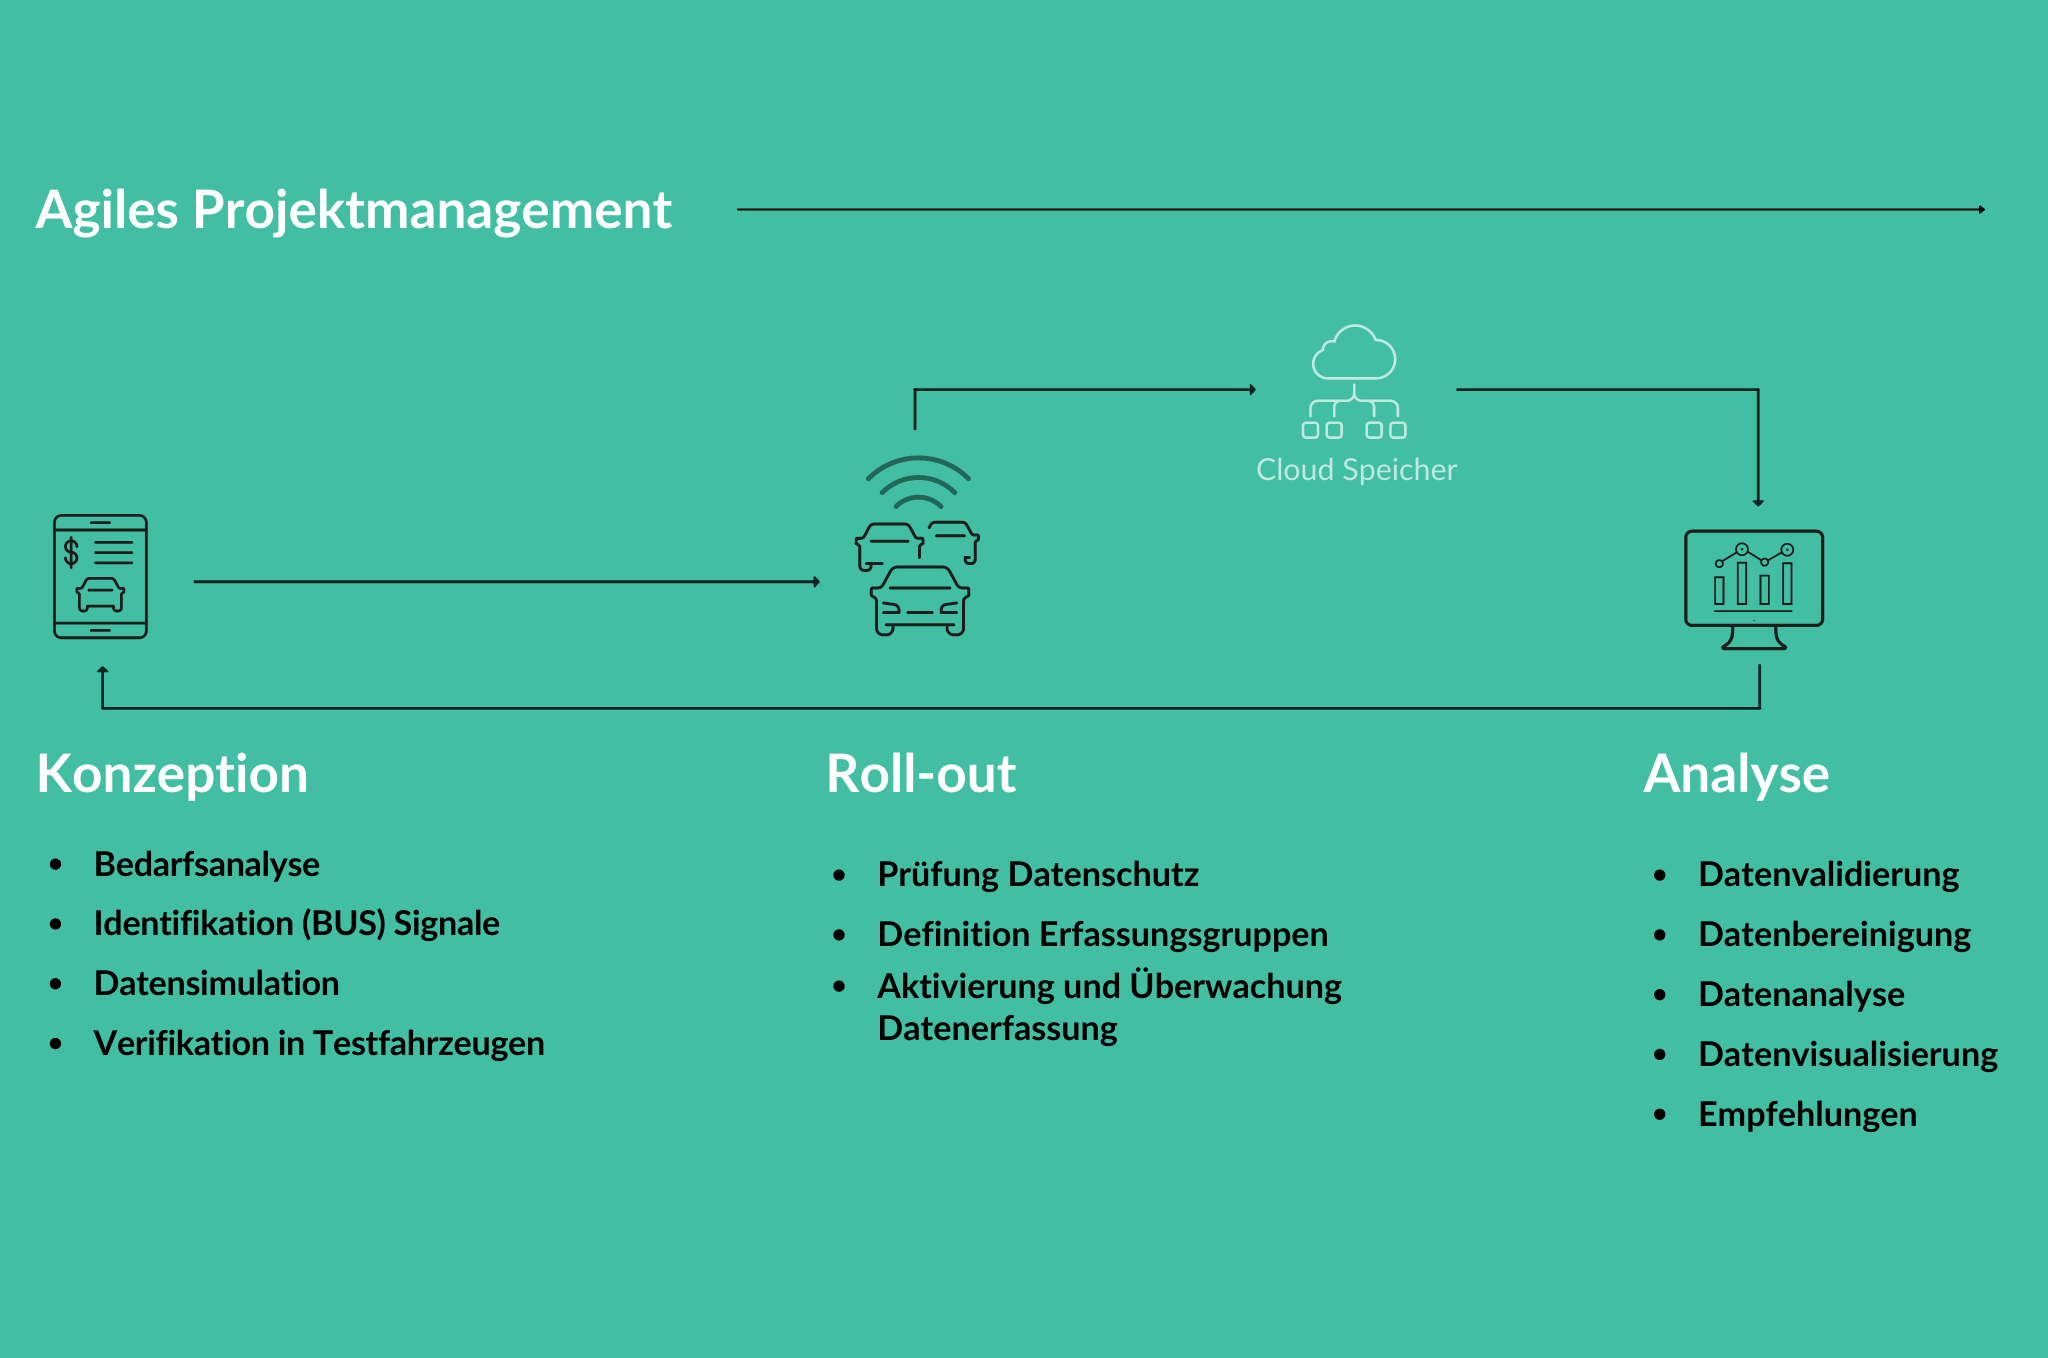 Agiles Projektmanagement, Echtzeitdatenanalyse - Kreislauf von Analyse, Roll-out, Konzeption und Cloud Speicher